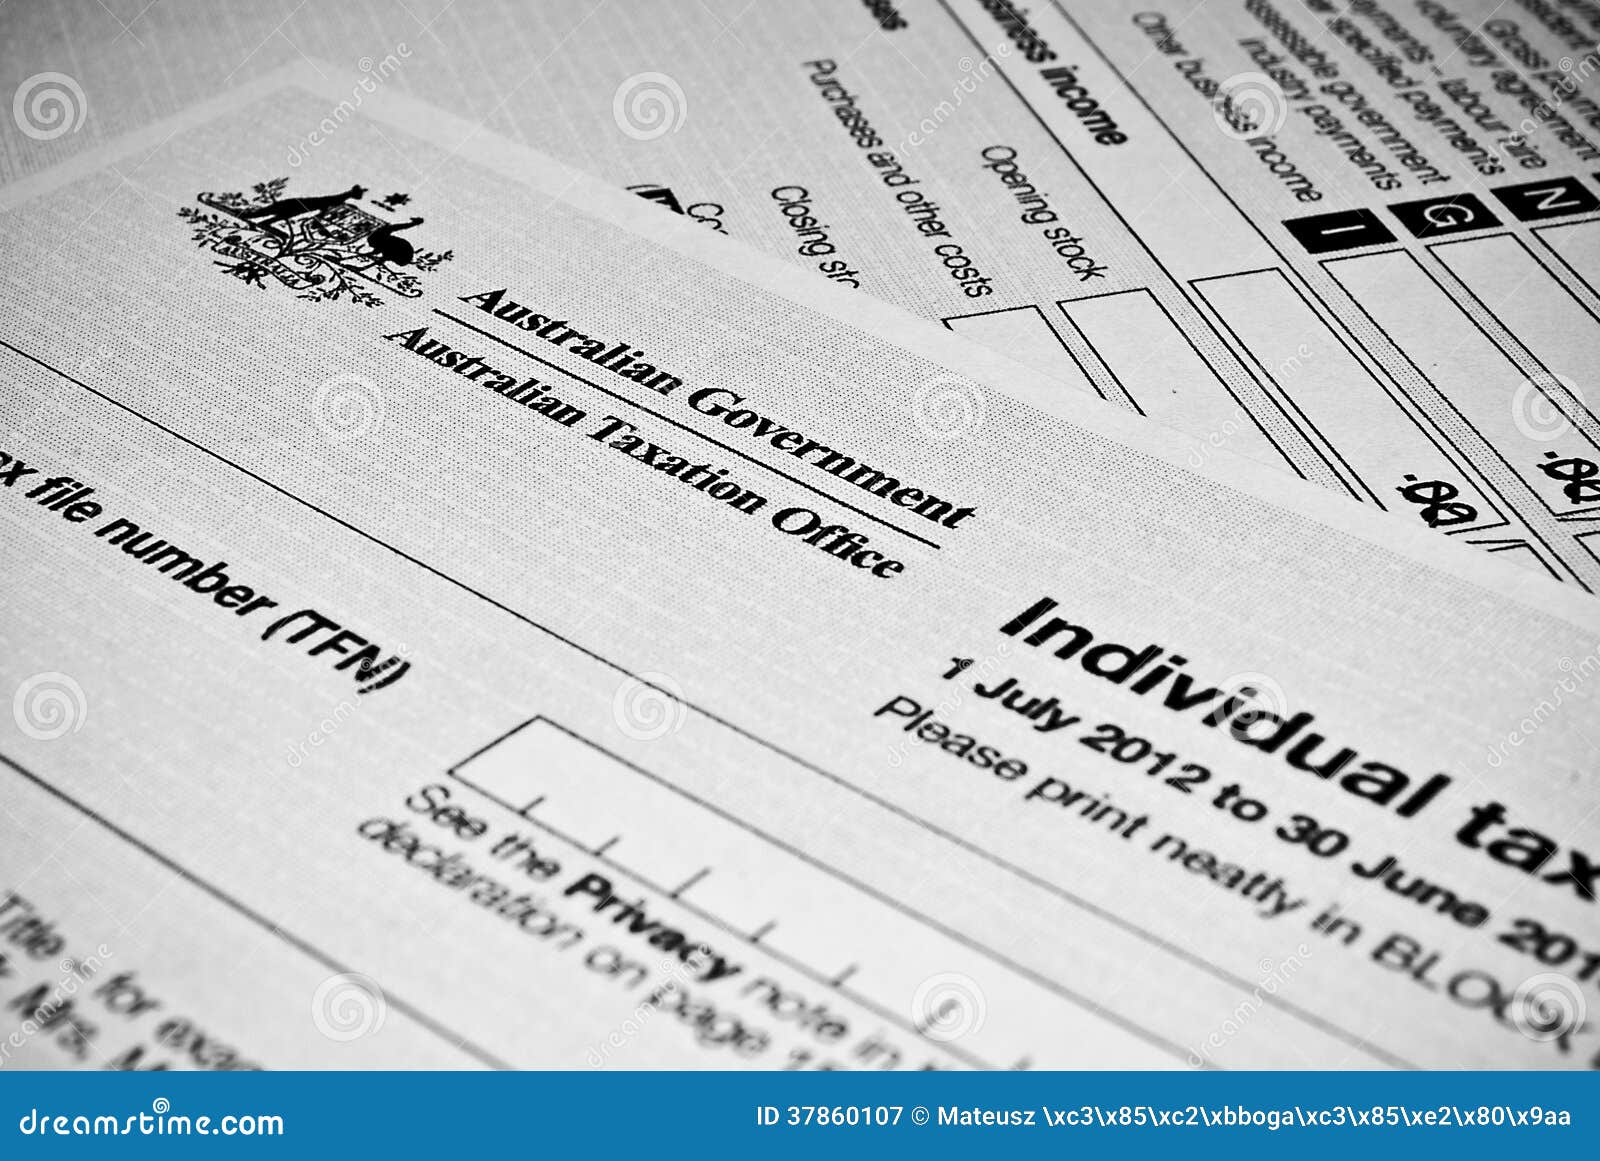 australian individual tax return form